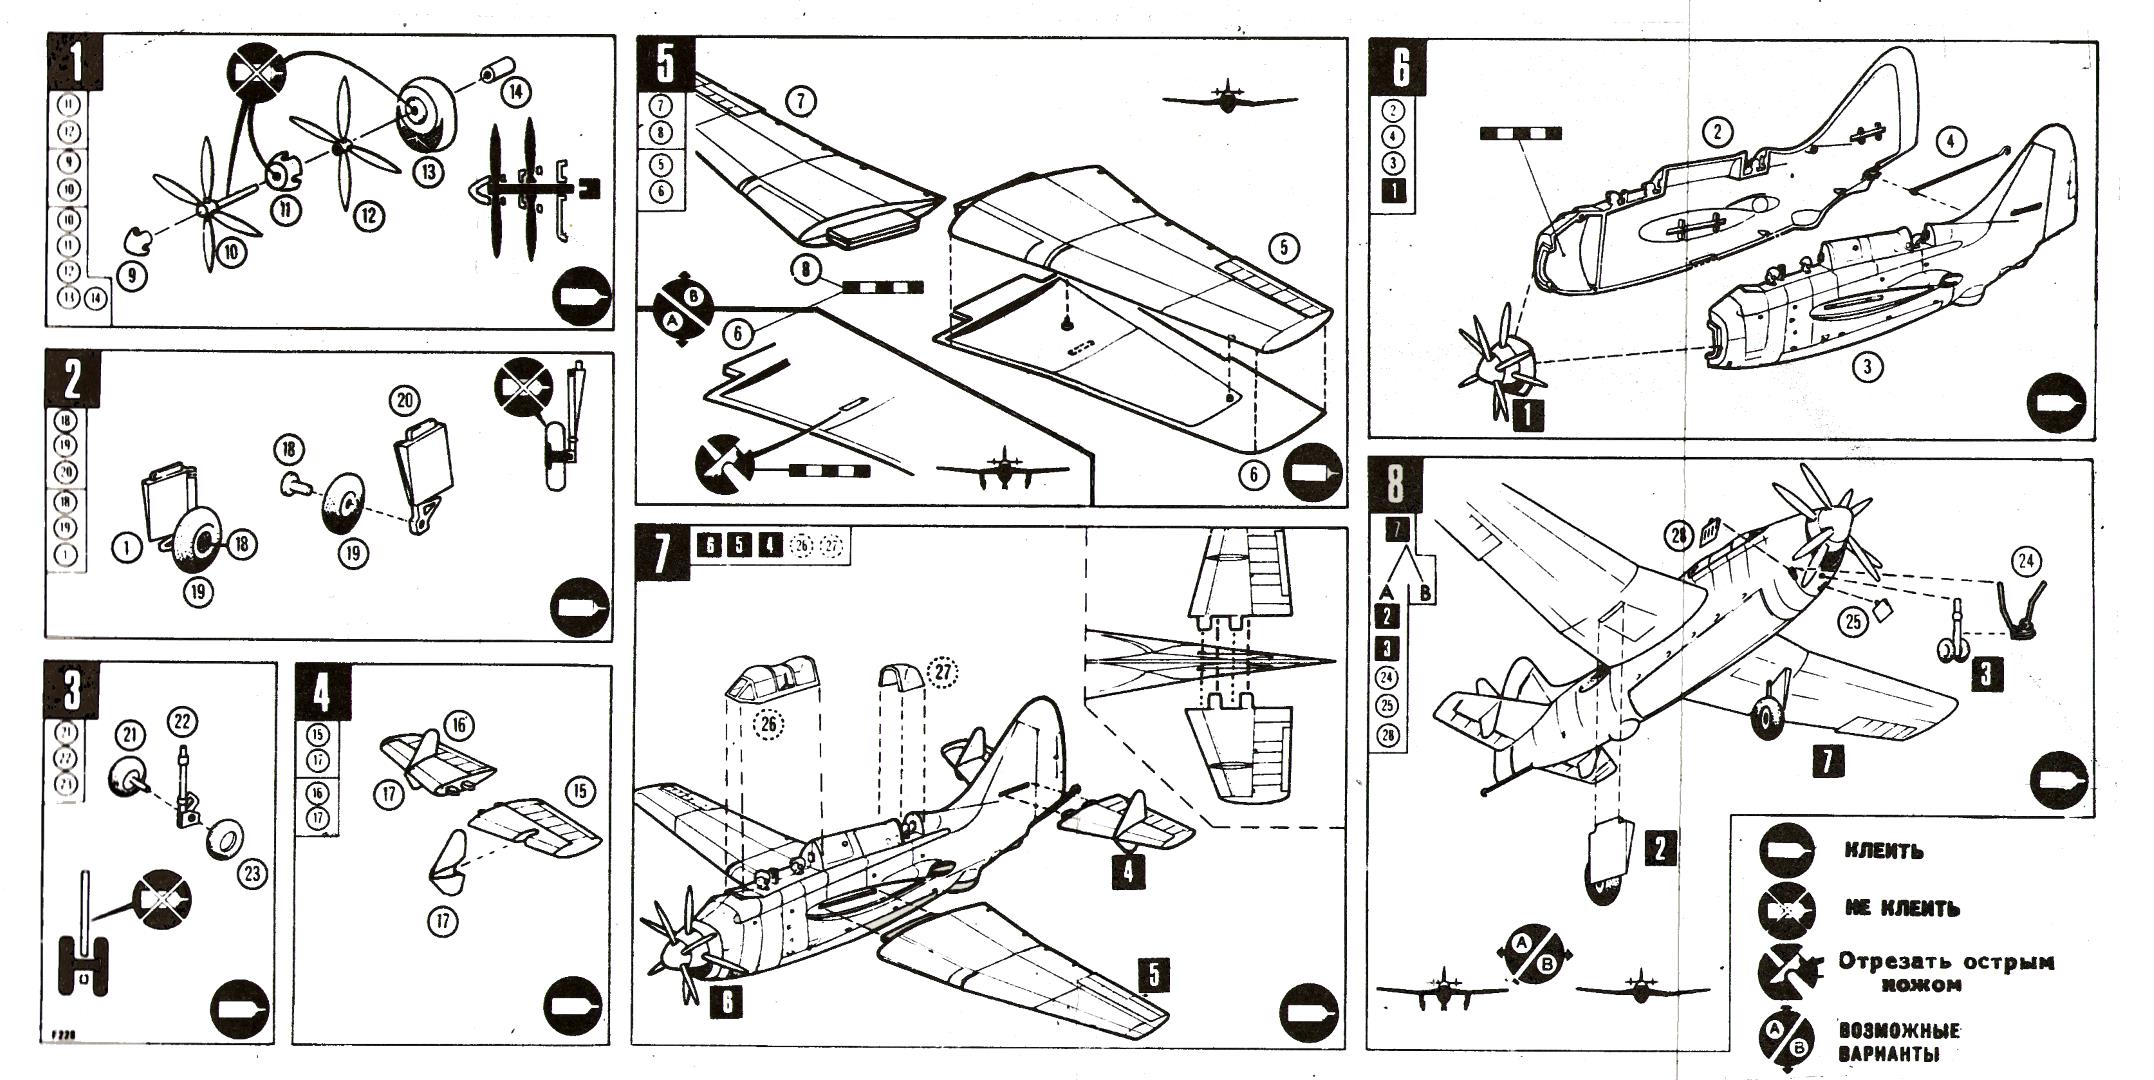 Инструкция, сборная модель самолёта Ф228